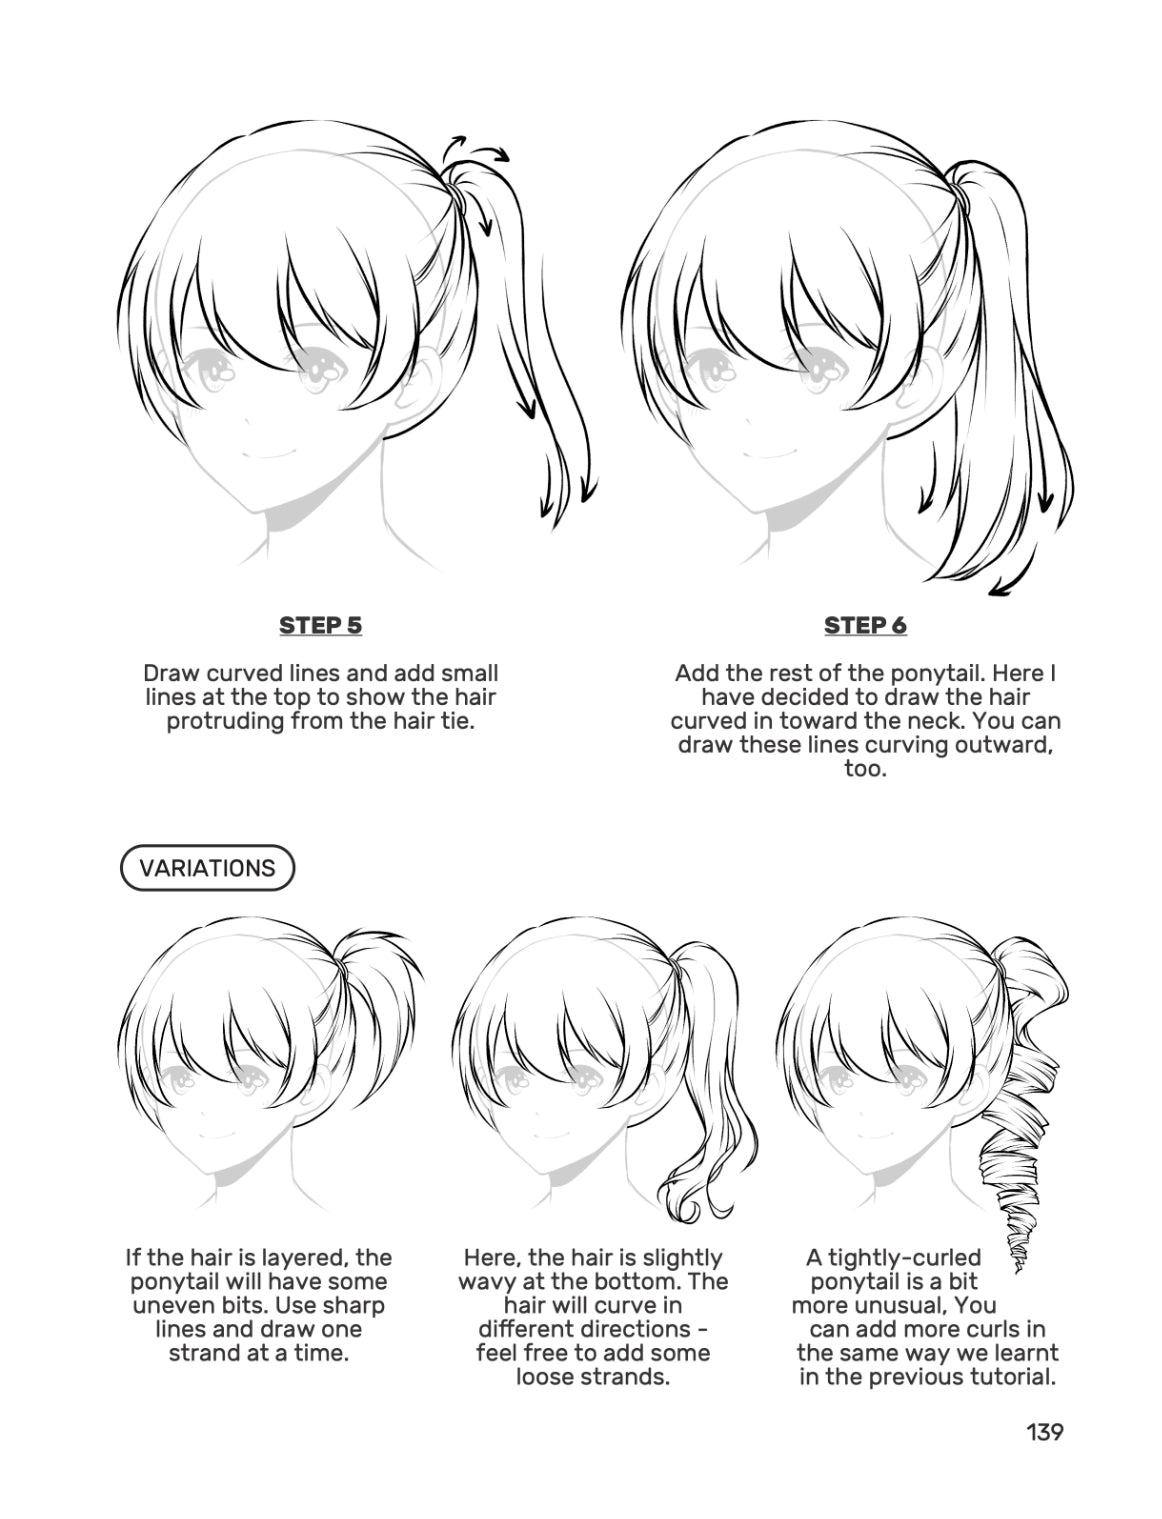 Mini tutorial: How to draw female manga/ anime hair 